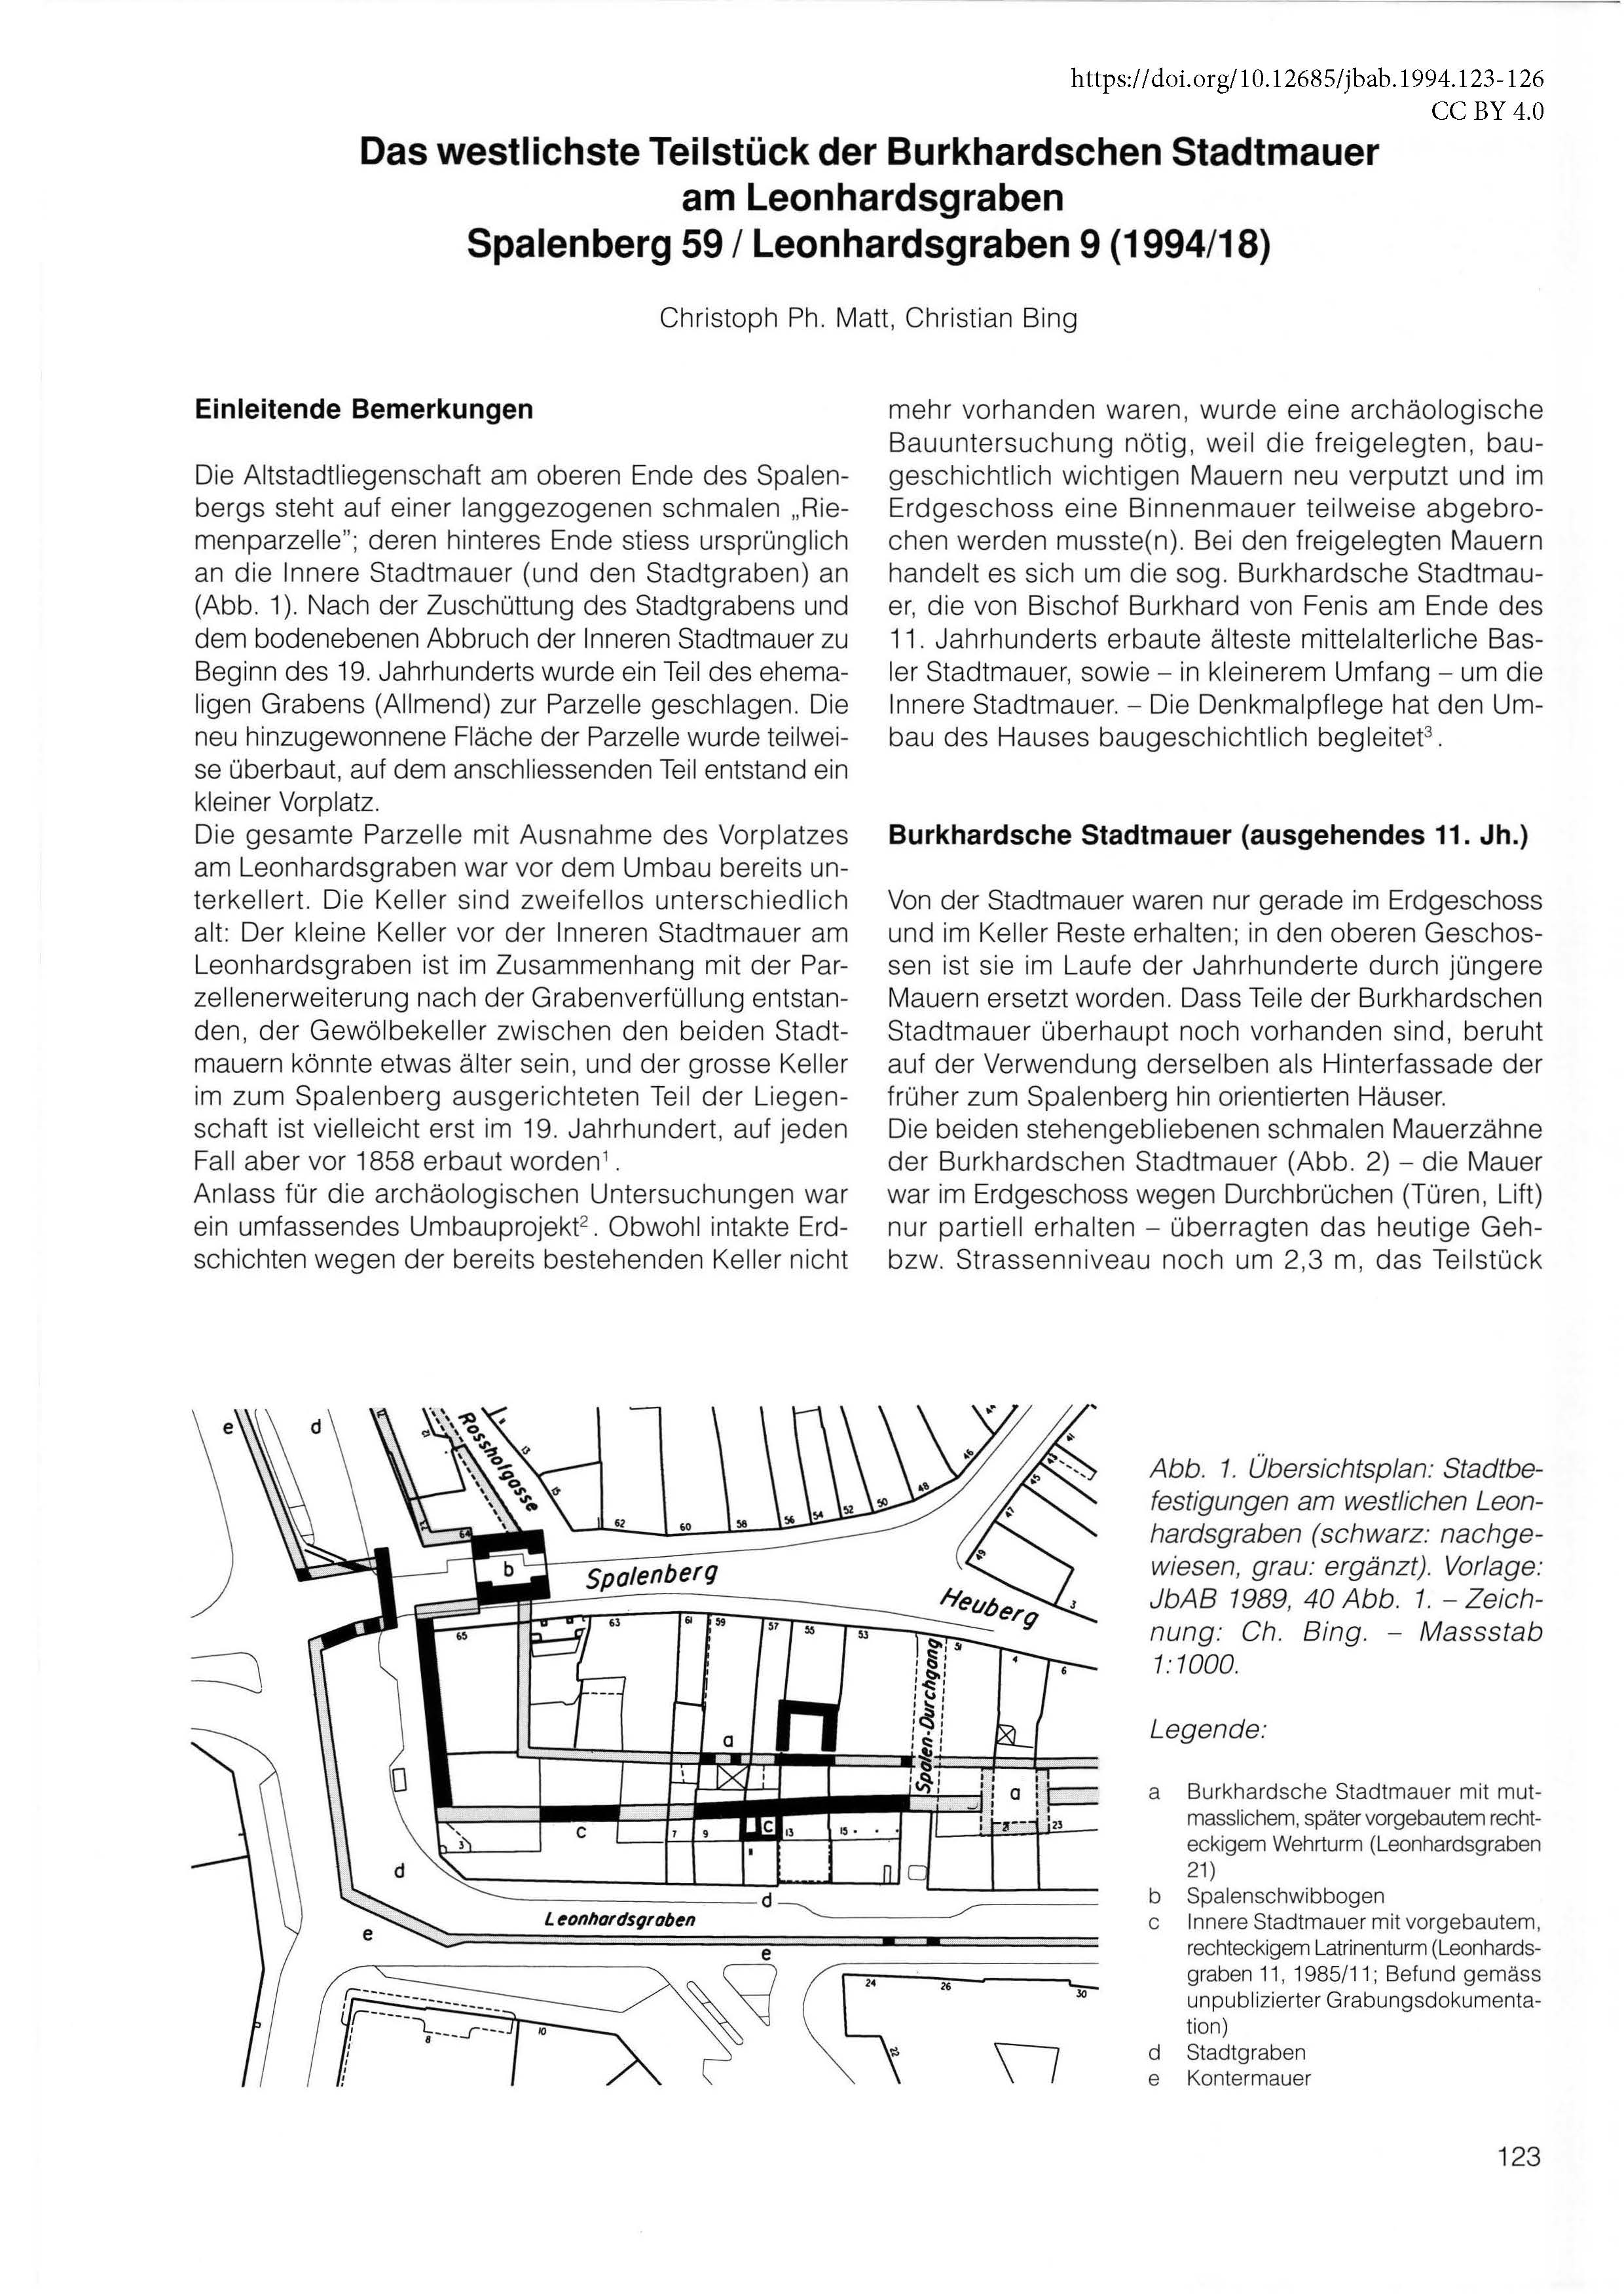 Erste Seite des Artikels über die Burkhardschen Stadtmauern am Leonhardsgraben